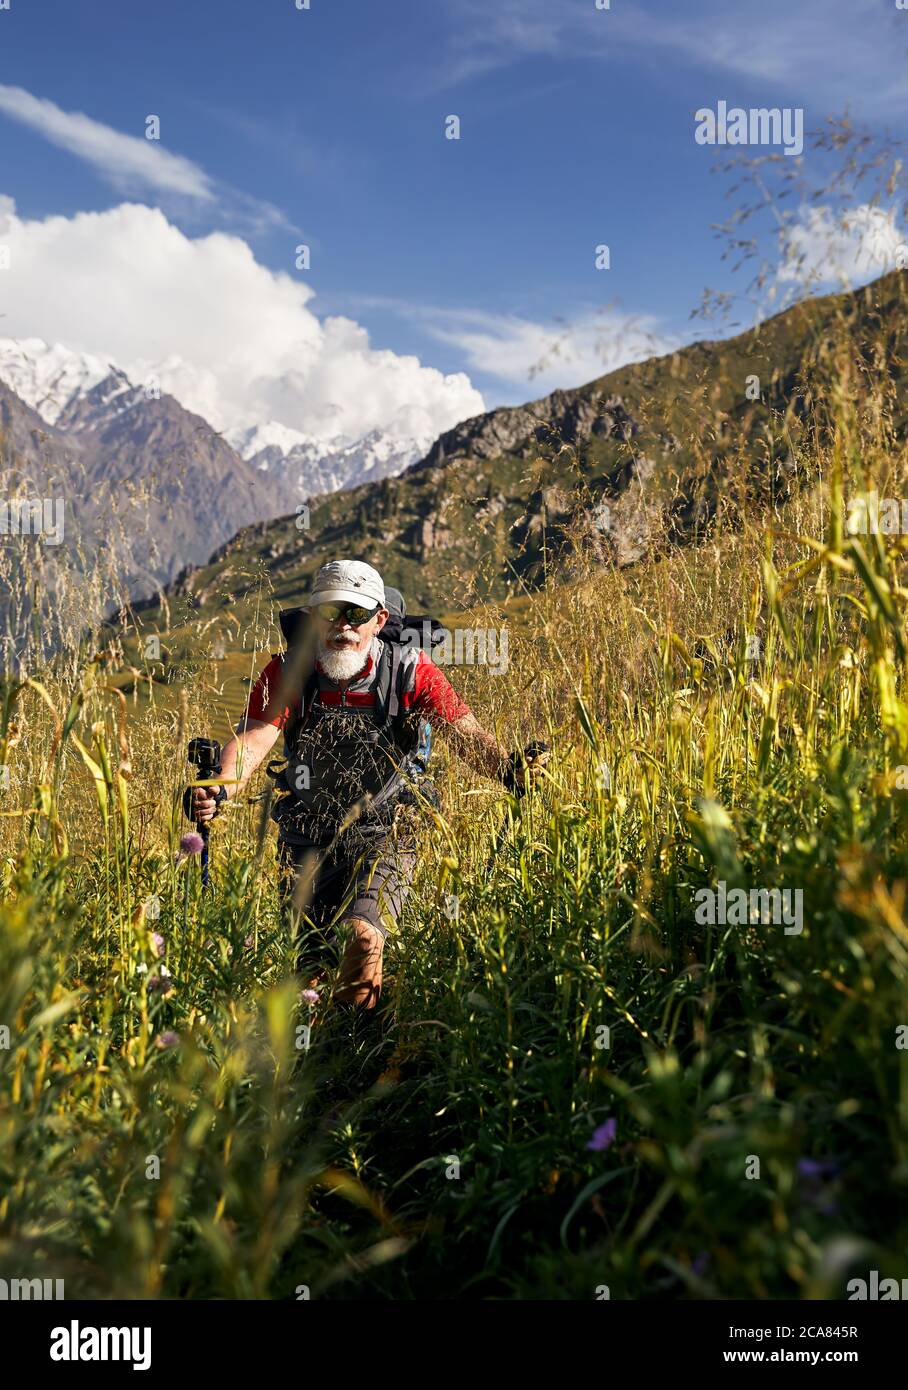 Portrait du touriste ancien avec une barbe blanche et un sac à dos marchant sur une colline verte dans la vallée de la montagne avec de hauts sommets enneigés Banque D'Images